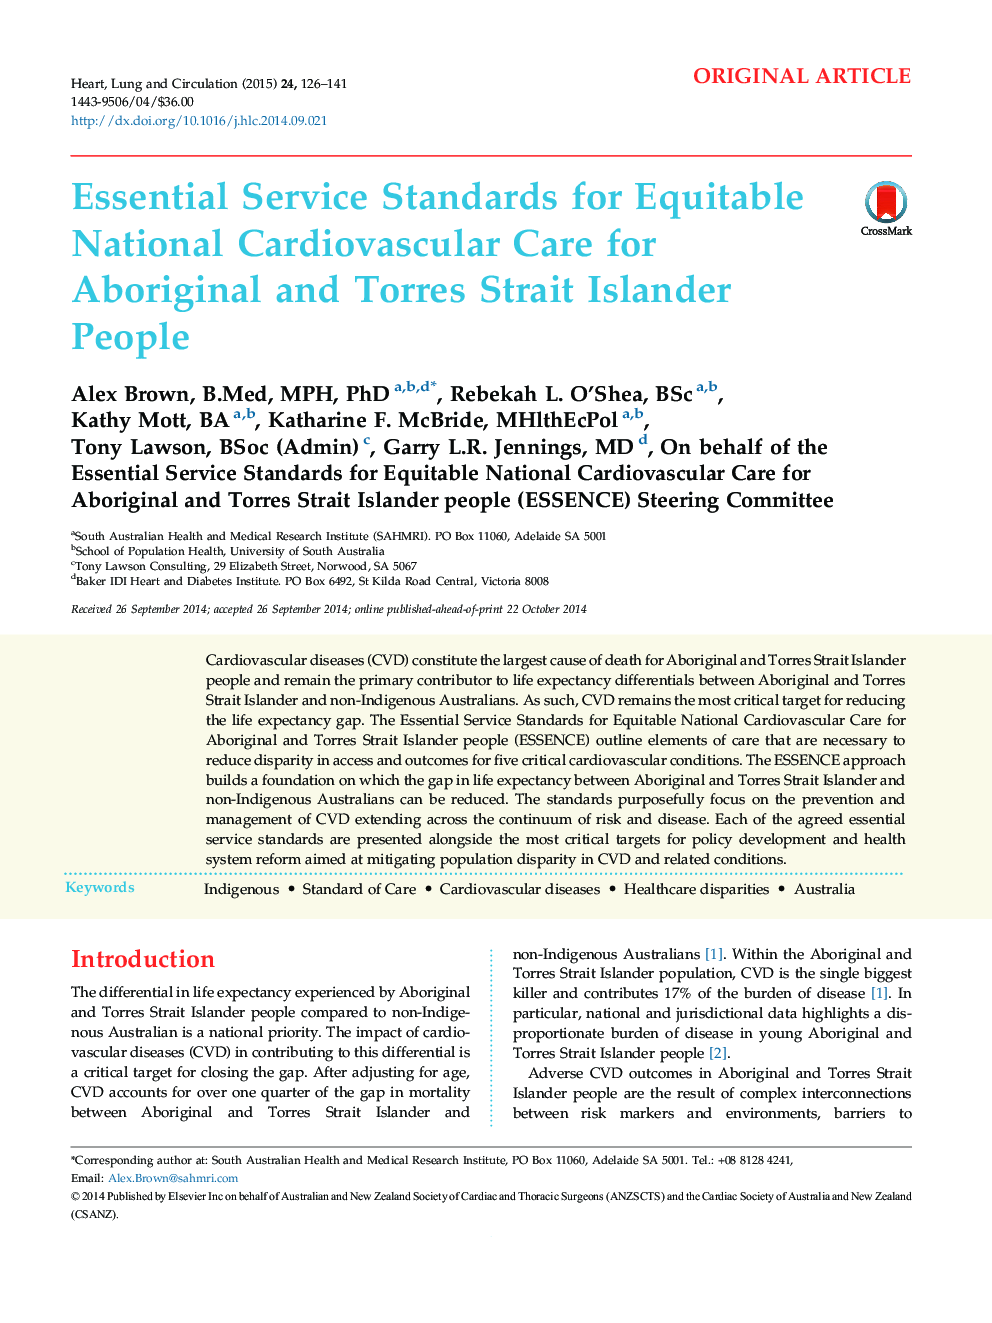 استانداردهای خدمات اساسی برای مراقبت های قلب و عروق مسالمت آمیز برای مردم بومی ساکن بومی و تورس 